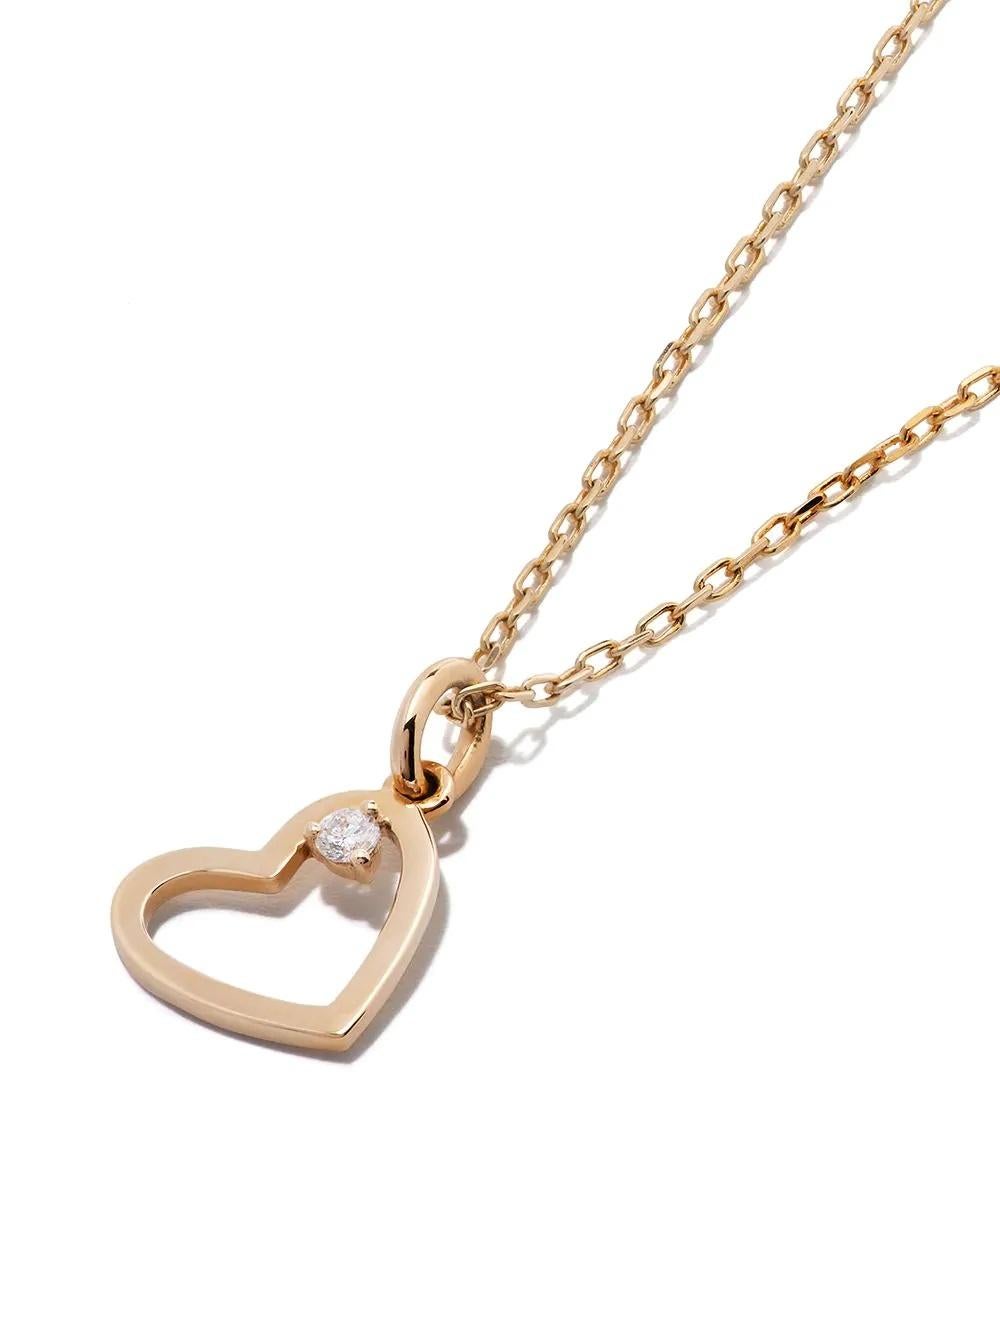 white gold heart pendant